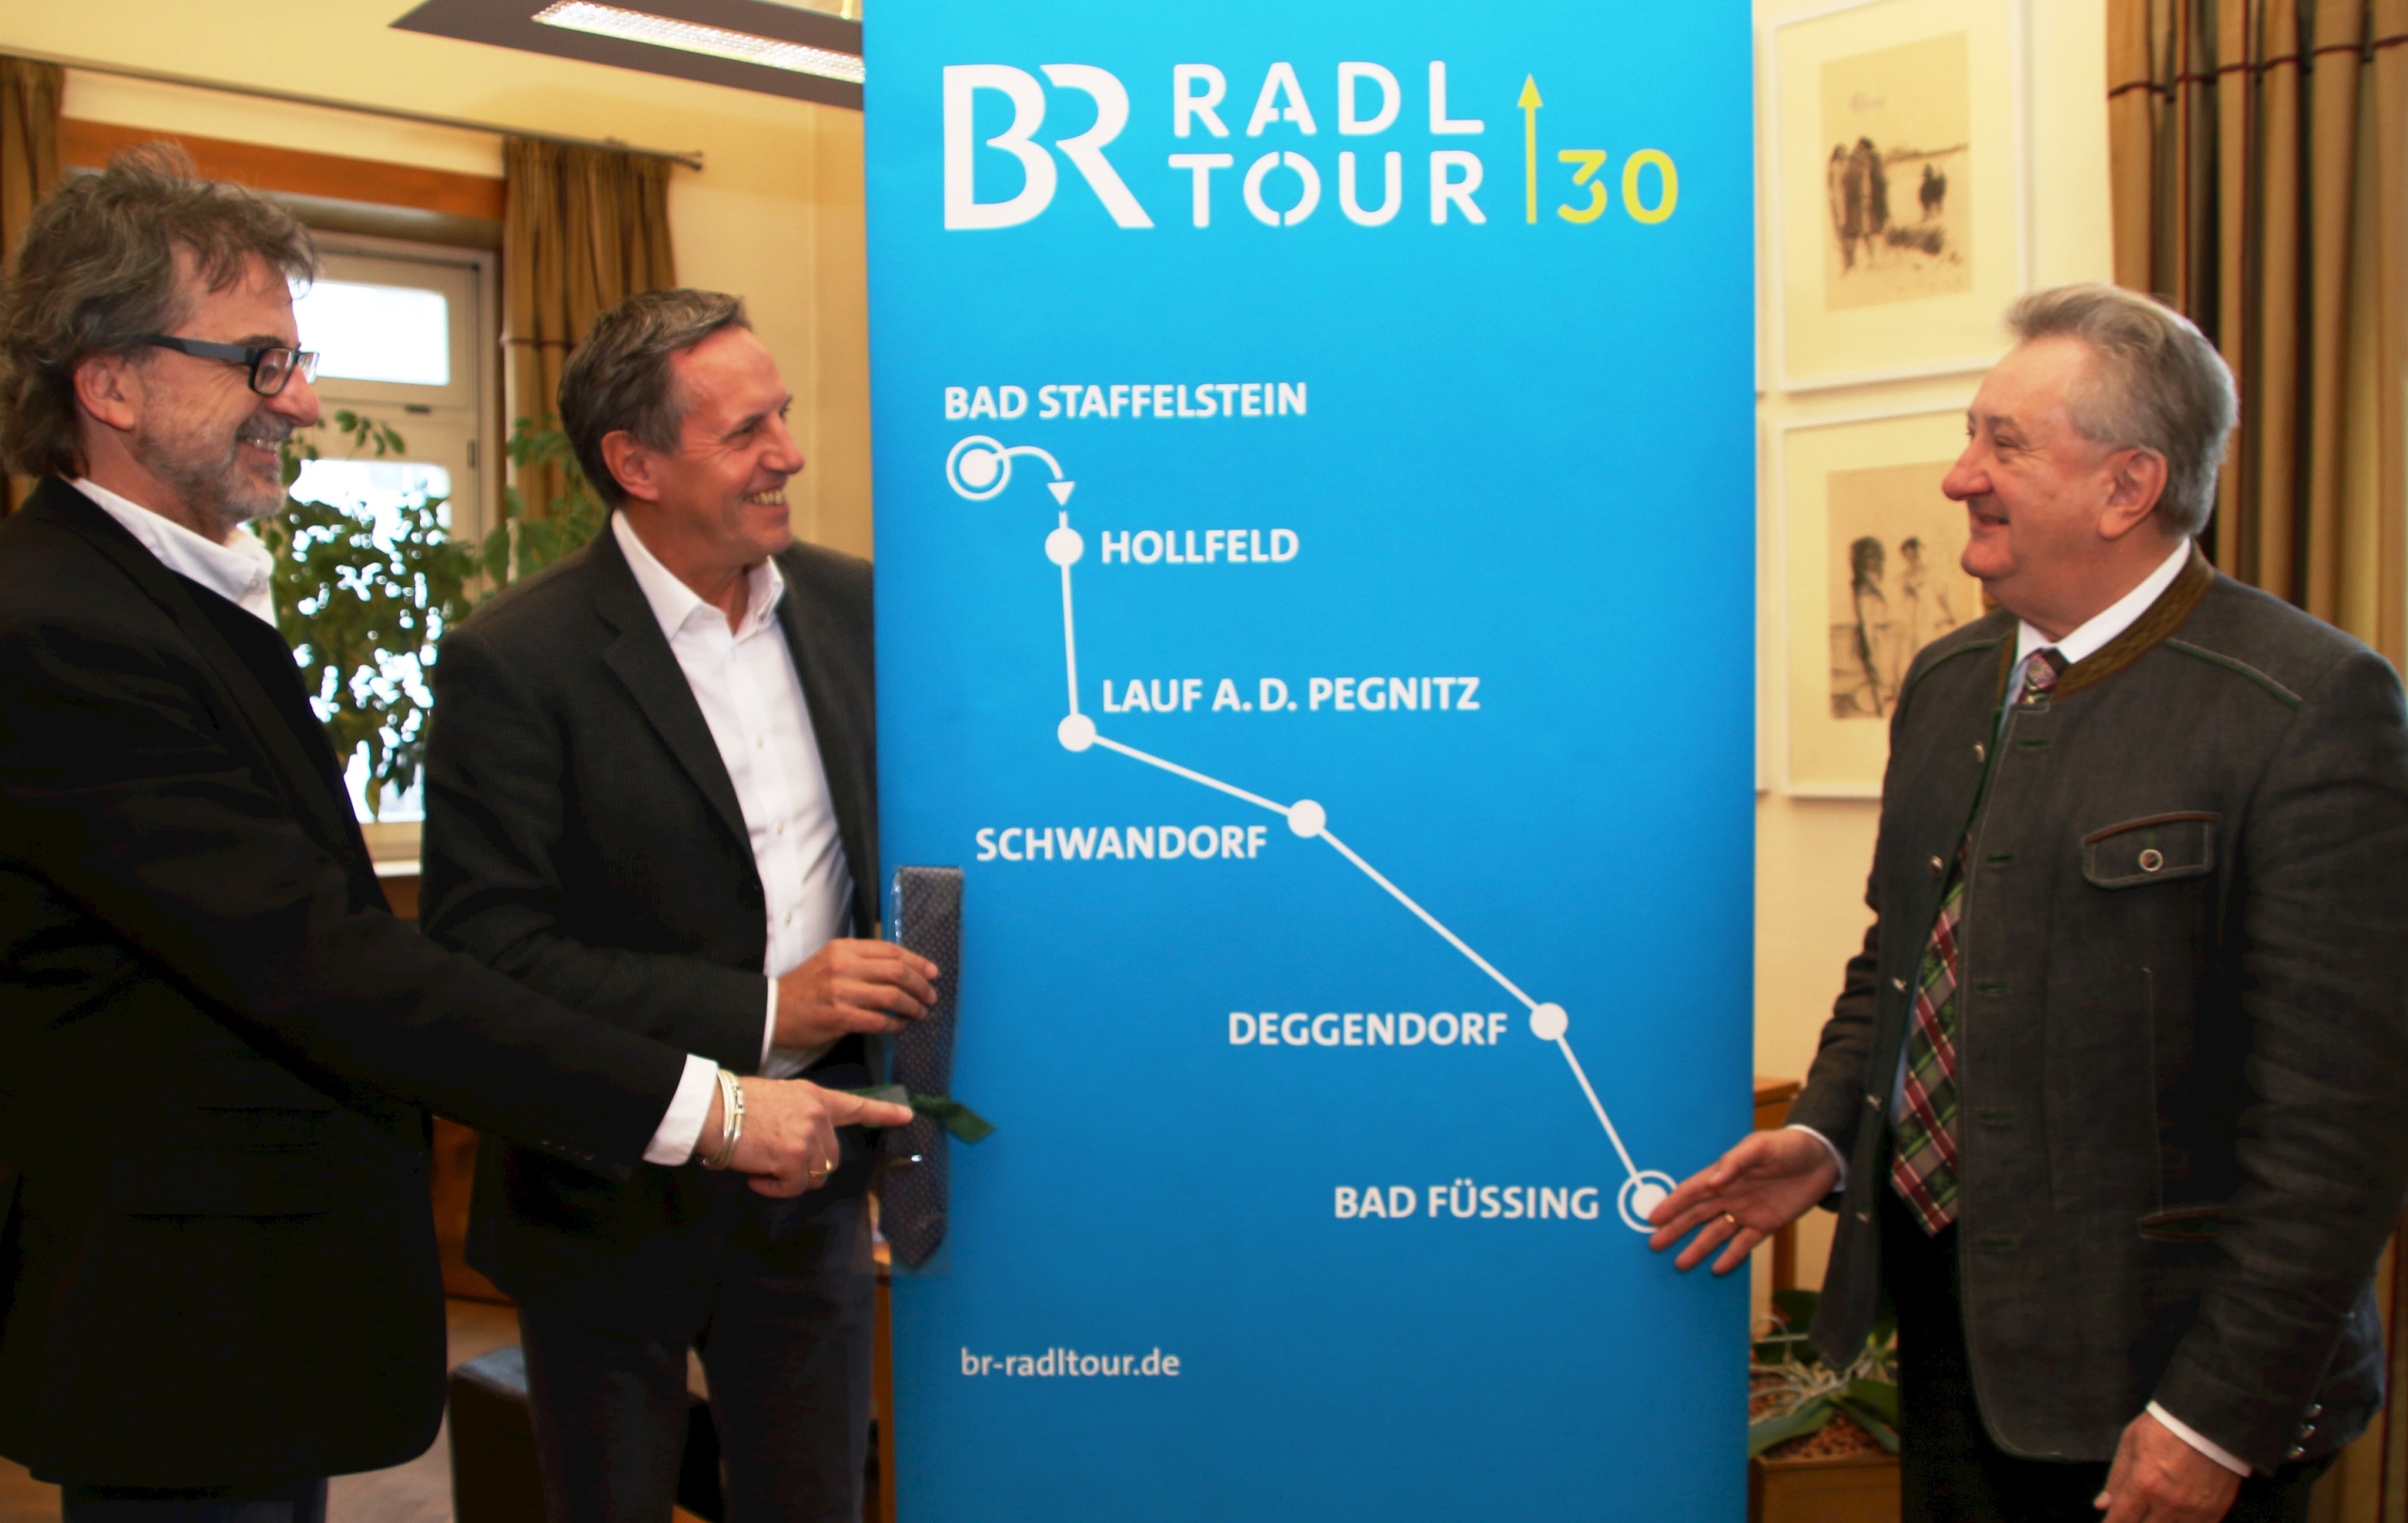 Bad Füssing ist Ziel der diesjährigen BR-Radltour. Über das Passauer Land als Gastgeber freuen sich Kulturreferent Christian Eberle (v.l.), Leiter der BR-Radltour, Wolfgang Slama und Landrat Franz Meyer.